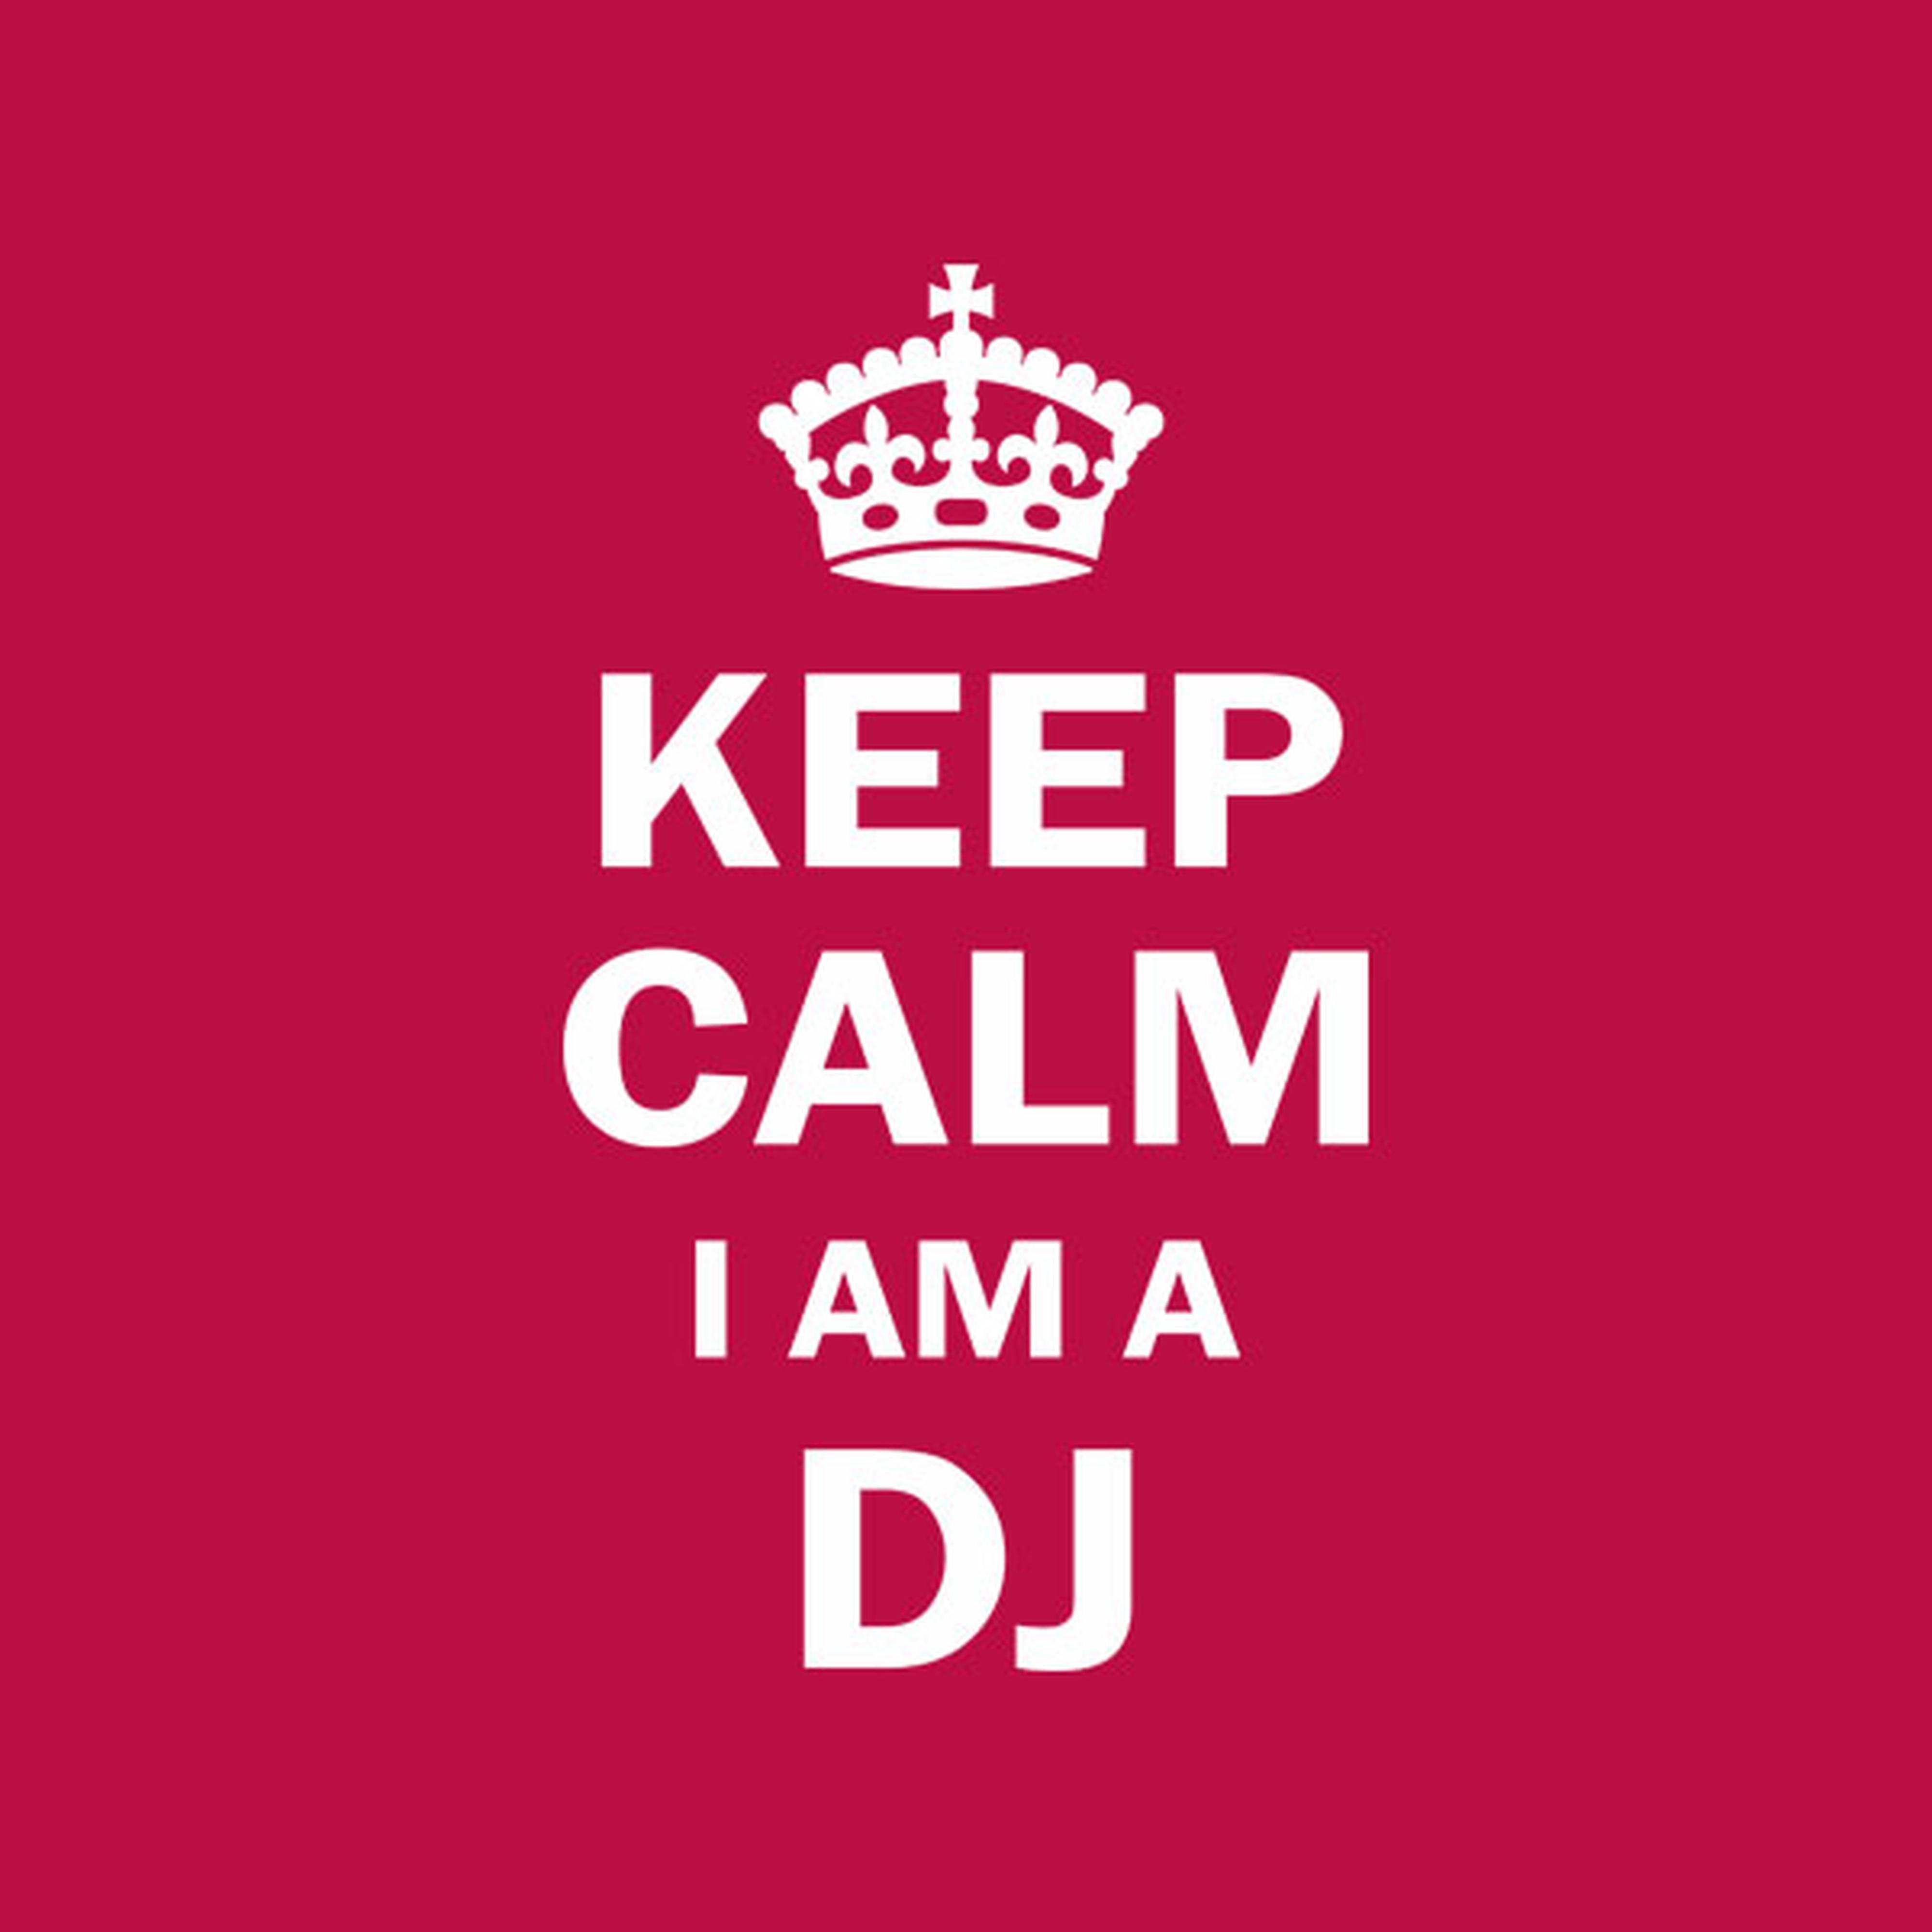 Keep calm I am a DJ - T-shirt